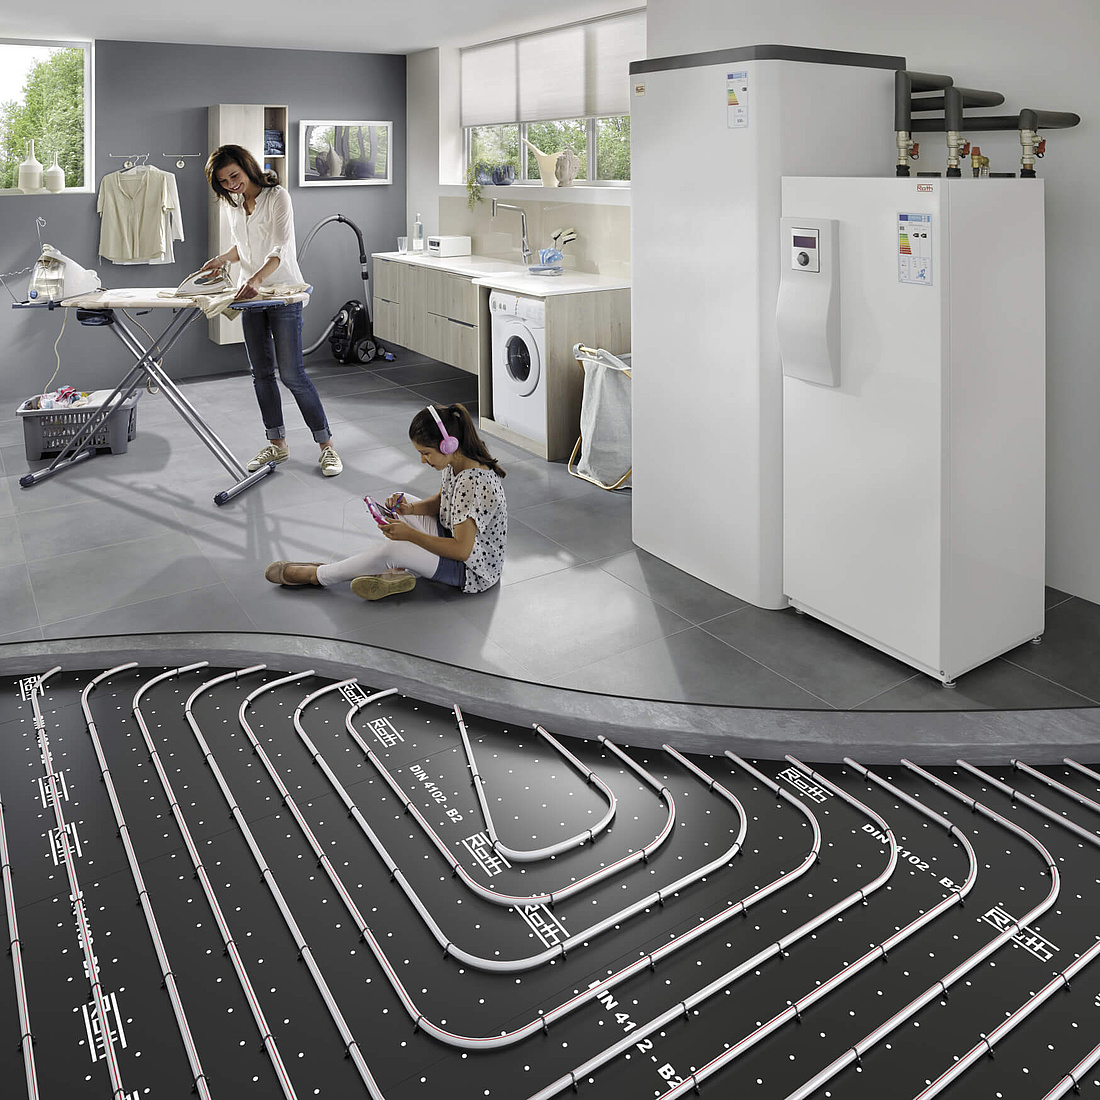 Dieses Bild veranschaulicht die wichtigen Komponenten Wärmepumpe, Speicher und Fußbodenheizung eines effizienten Wärmepumpensystems